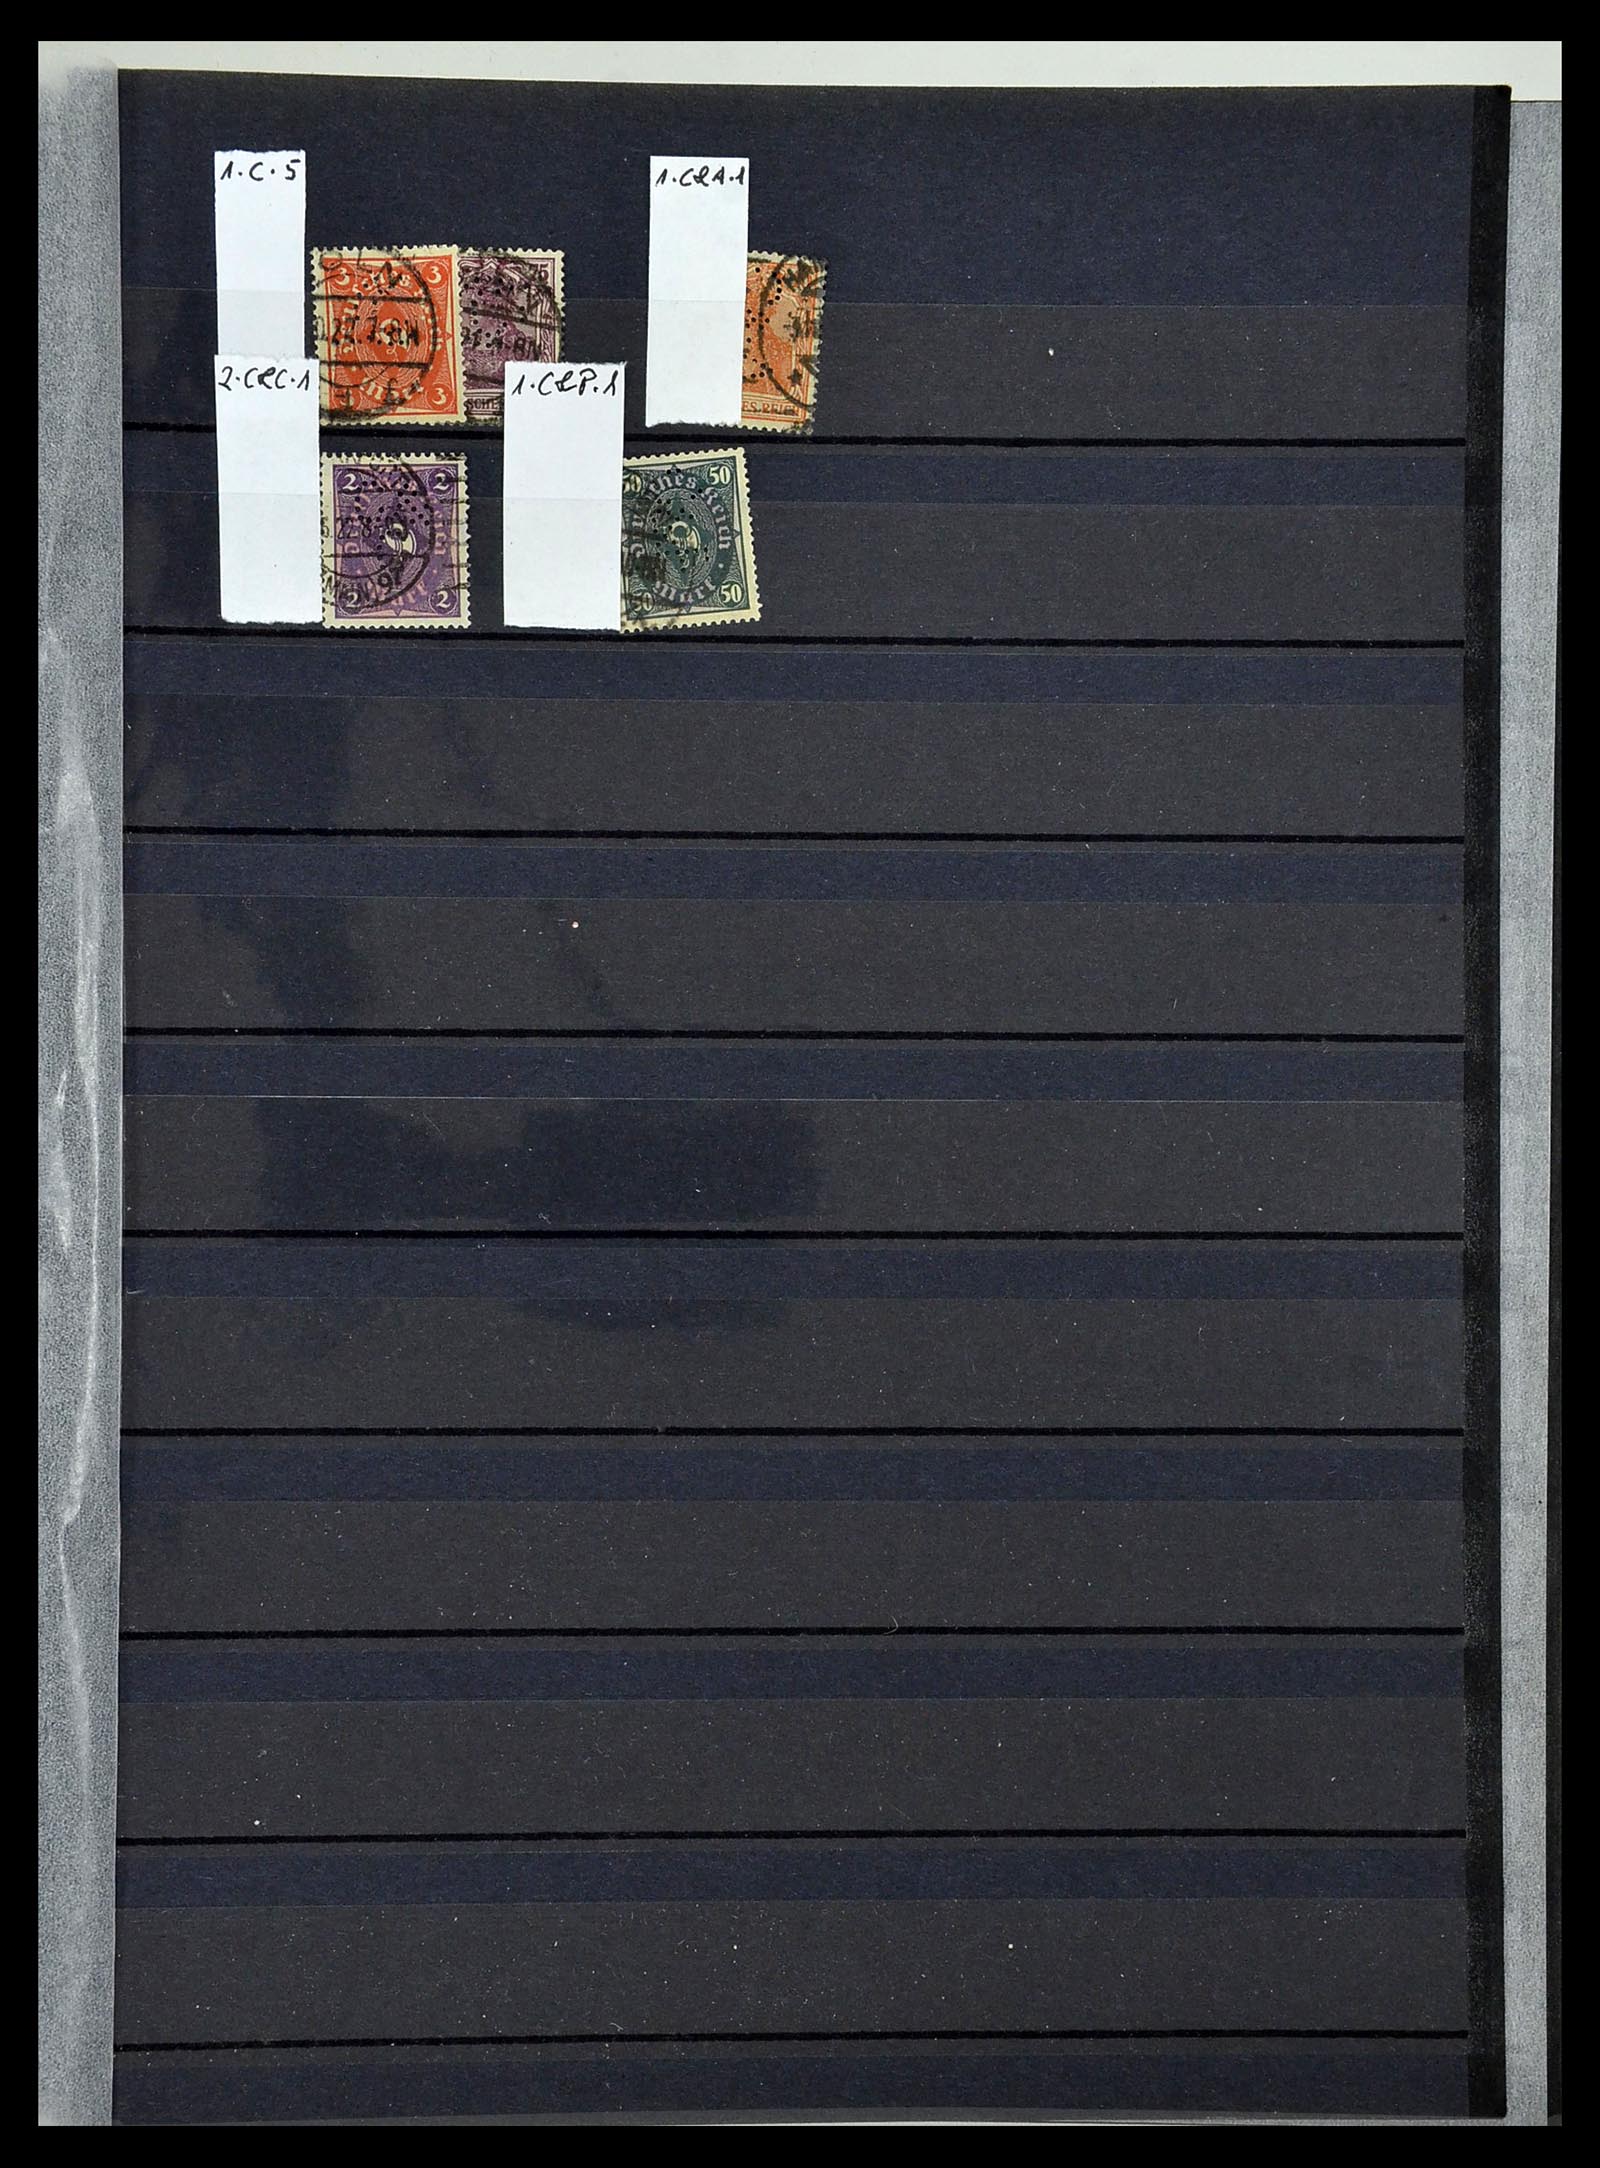 34432 075 - Stamp Collection 34432 German Reich perfins 1900-1933.